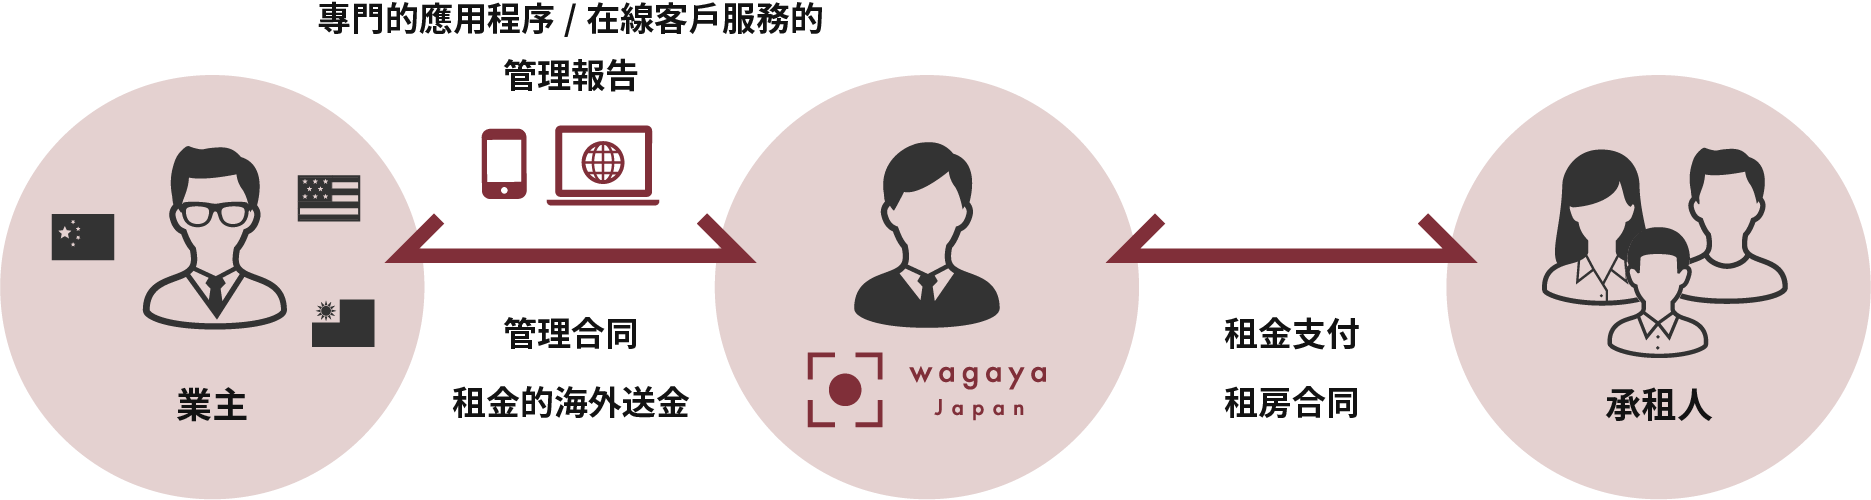 wagaya日本PM&L提供從空屋對策到日常管理的報告的全套餐服務